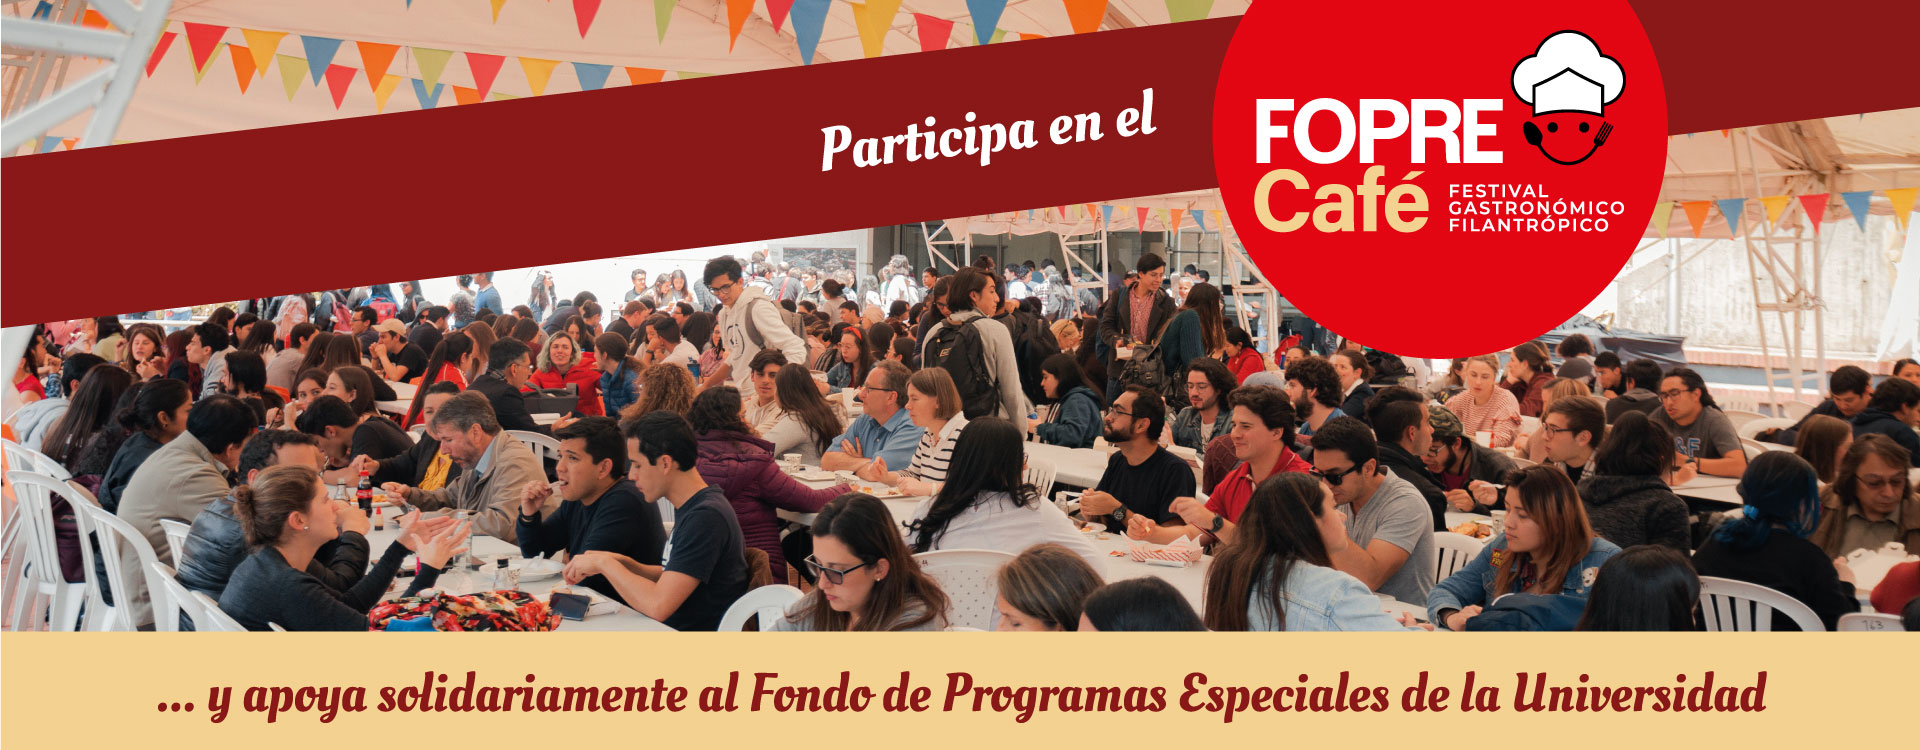 Después de 2 años regresa el Fopre Café Festival Gastronómico a la Universidad de los Andes con algunas novedades y un objetivo en común: recaudar recursos para apoyar a estudiantes de pregrado que no cuentan con los medios económicos para su sostenimiento durante la época de estudios.